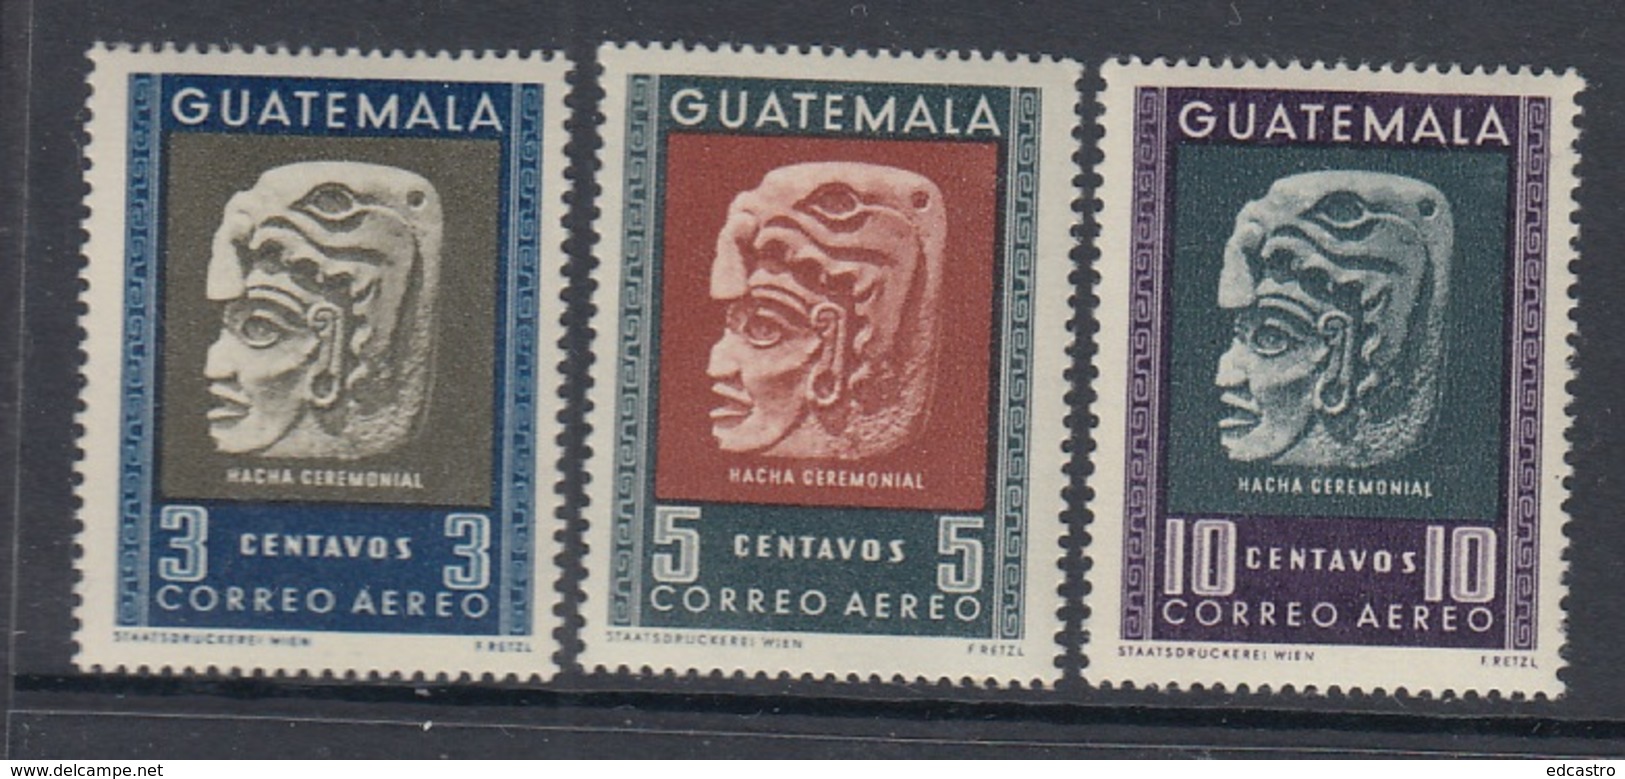 7.- GUATEMALA 1953 CEREMONIAL AX OF MAYAN CULTURE - Guatemala